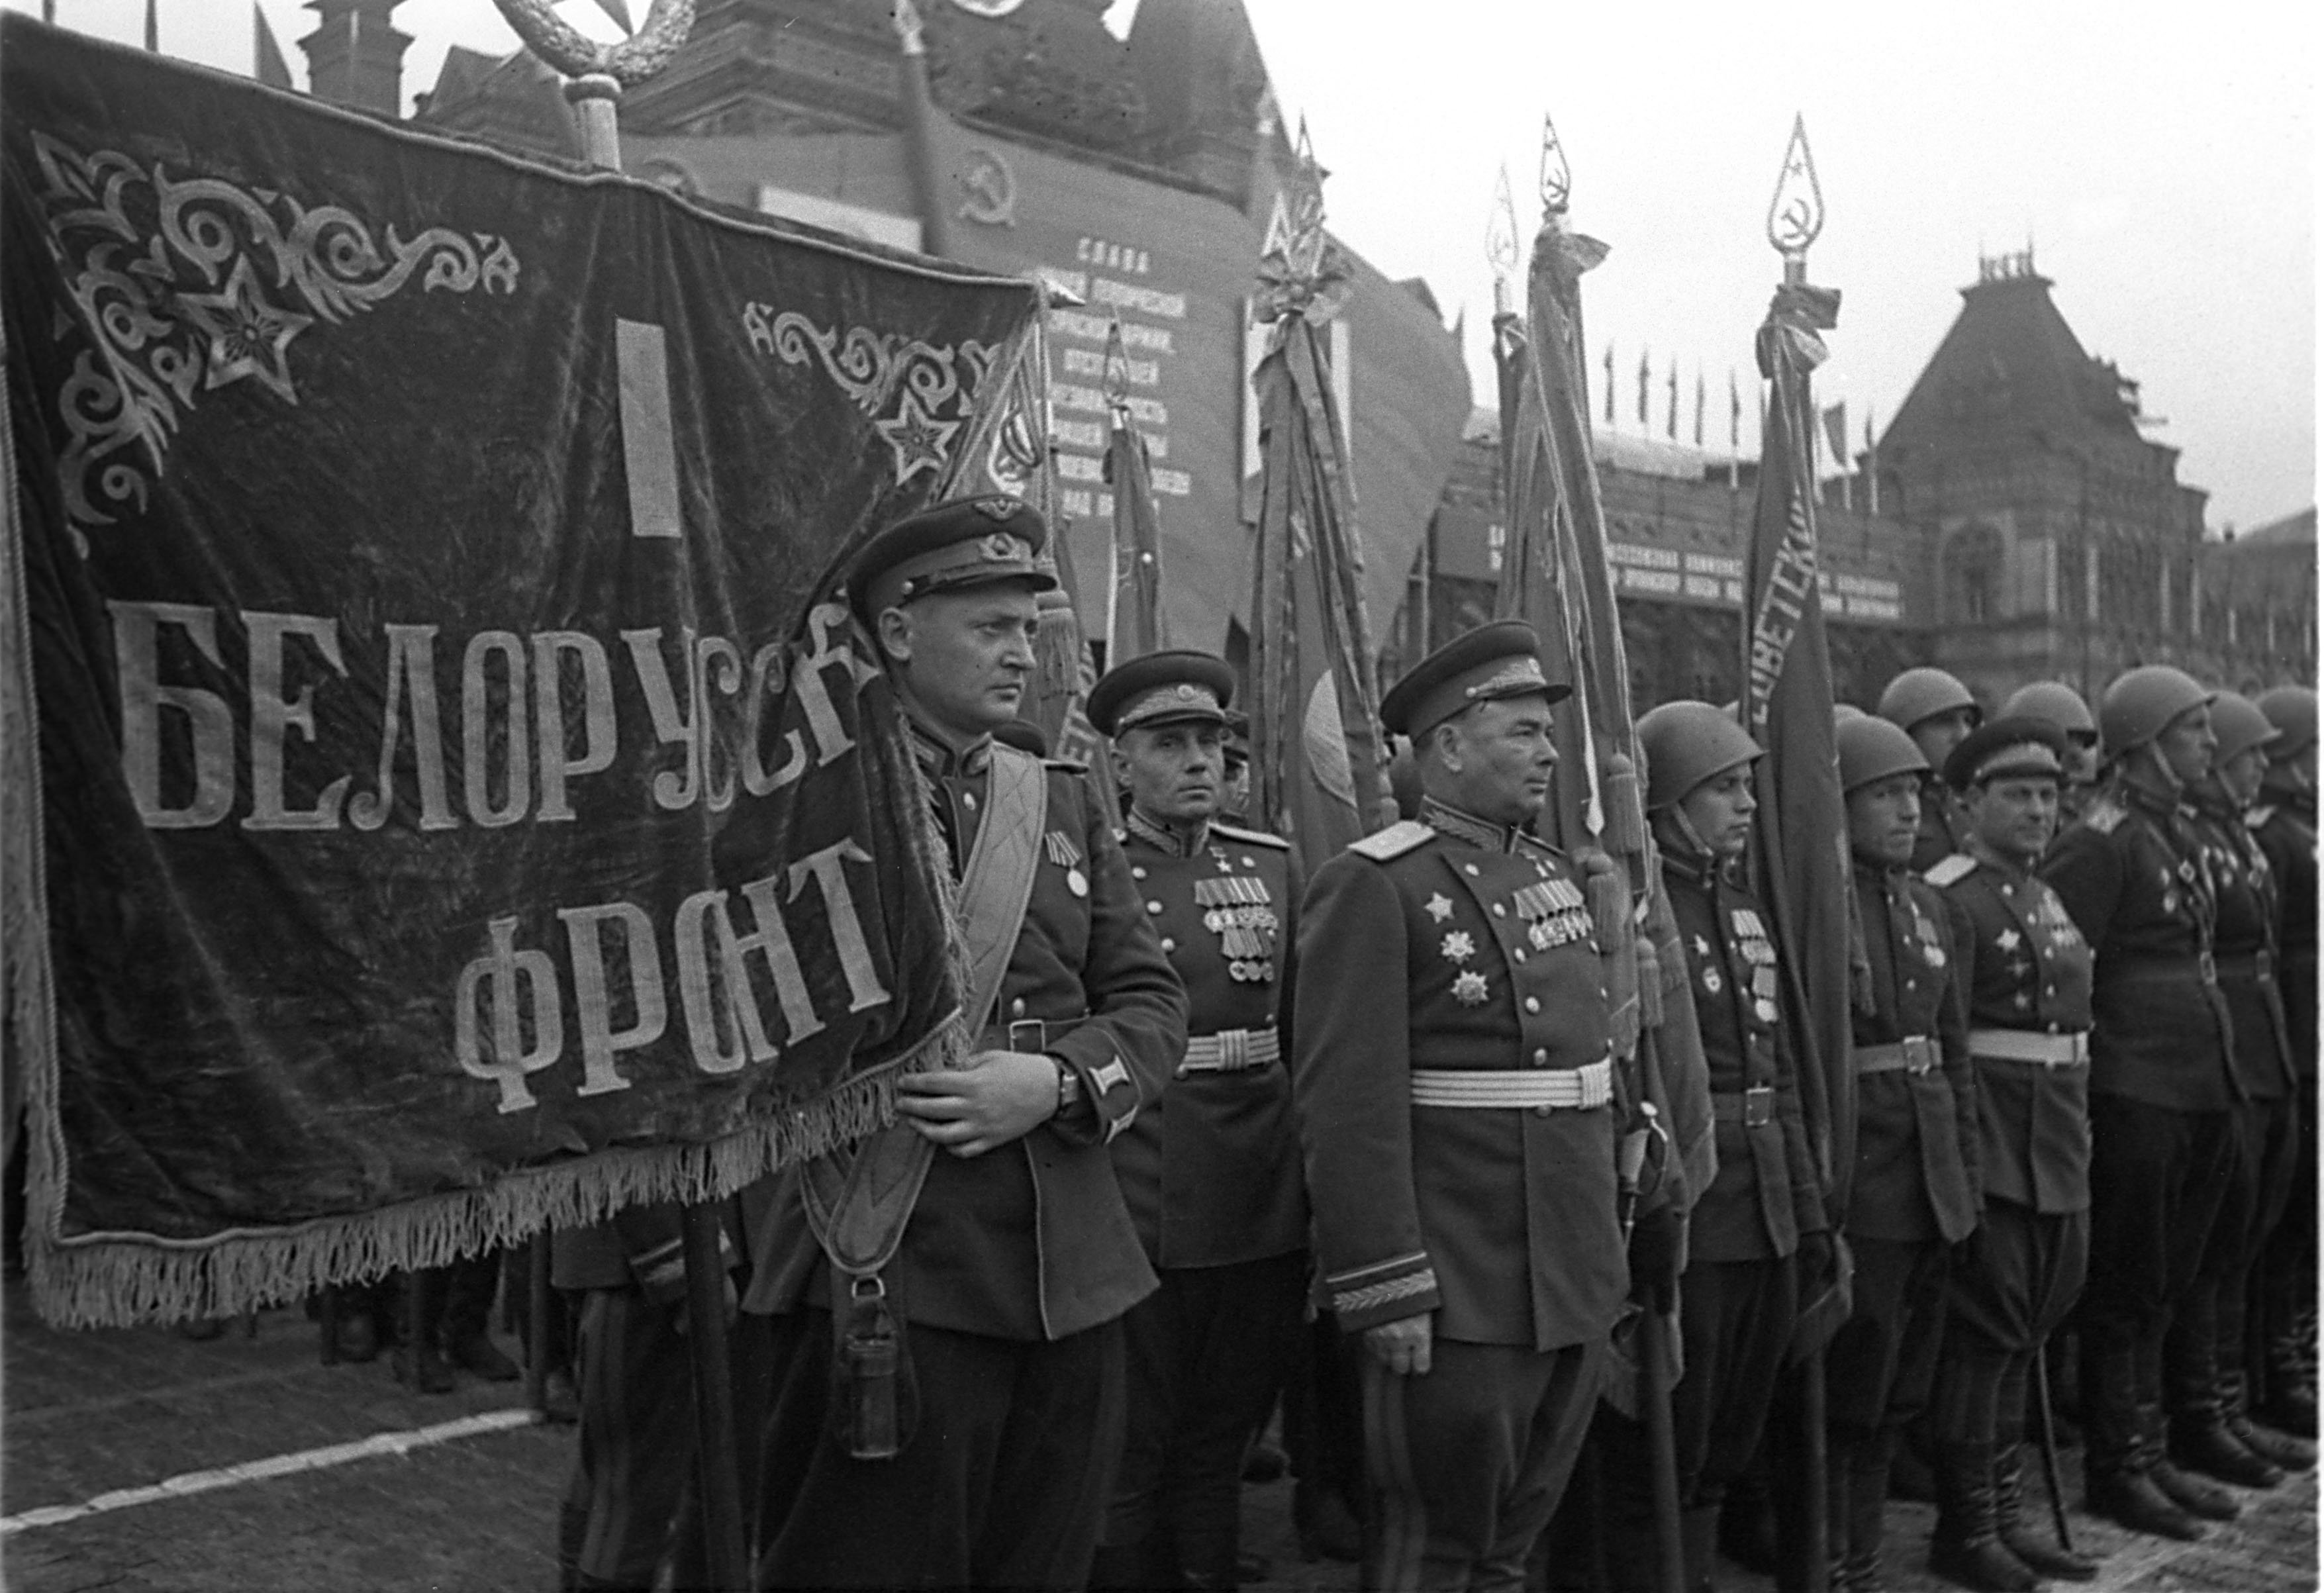 Фото победы великой отечественной войны 1945. 1-Й белорусский фронт на парада Победы 1945. Штандарты фронтов на параде Победы 1945.